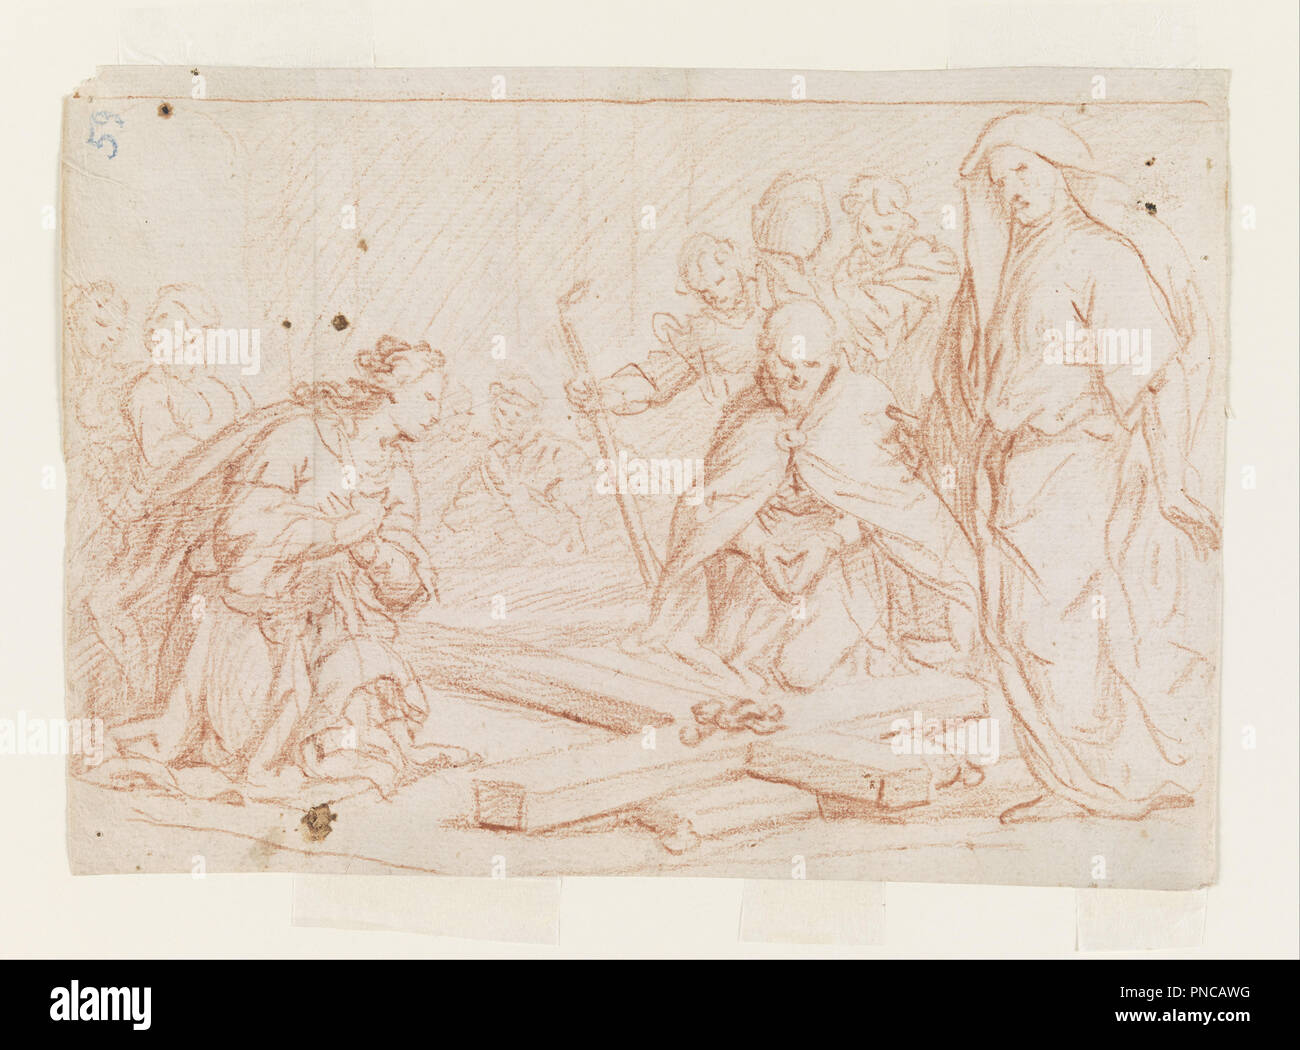 La recherche de la Croix. Date/Période : Ca. 1650. Dessin. Craie rouge sur papier vergé crème. Auteur : Luca Giordano. Banque D'Images